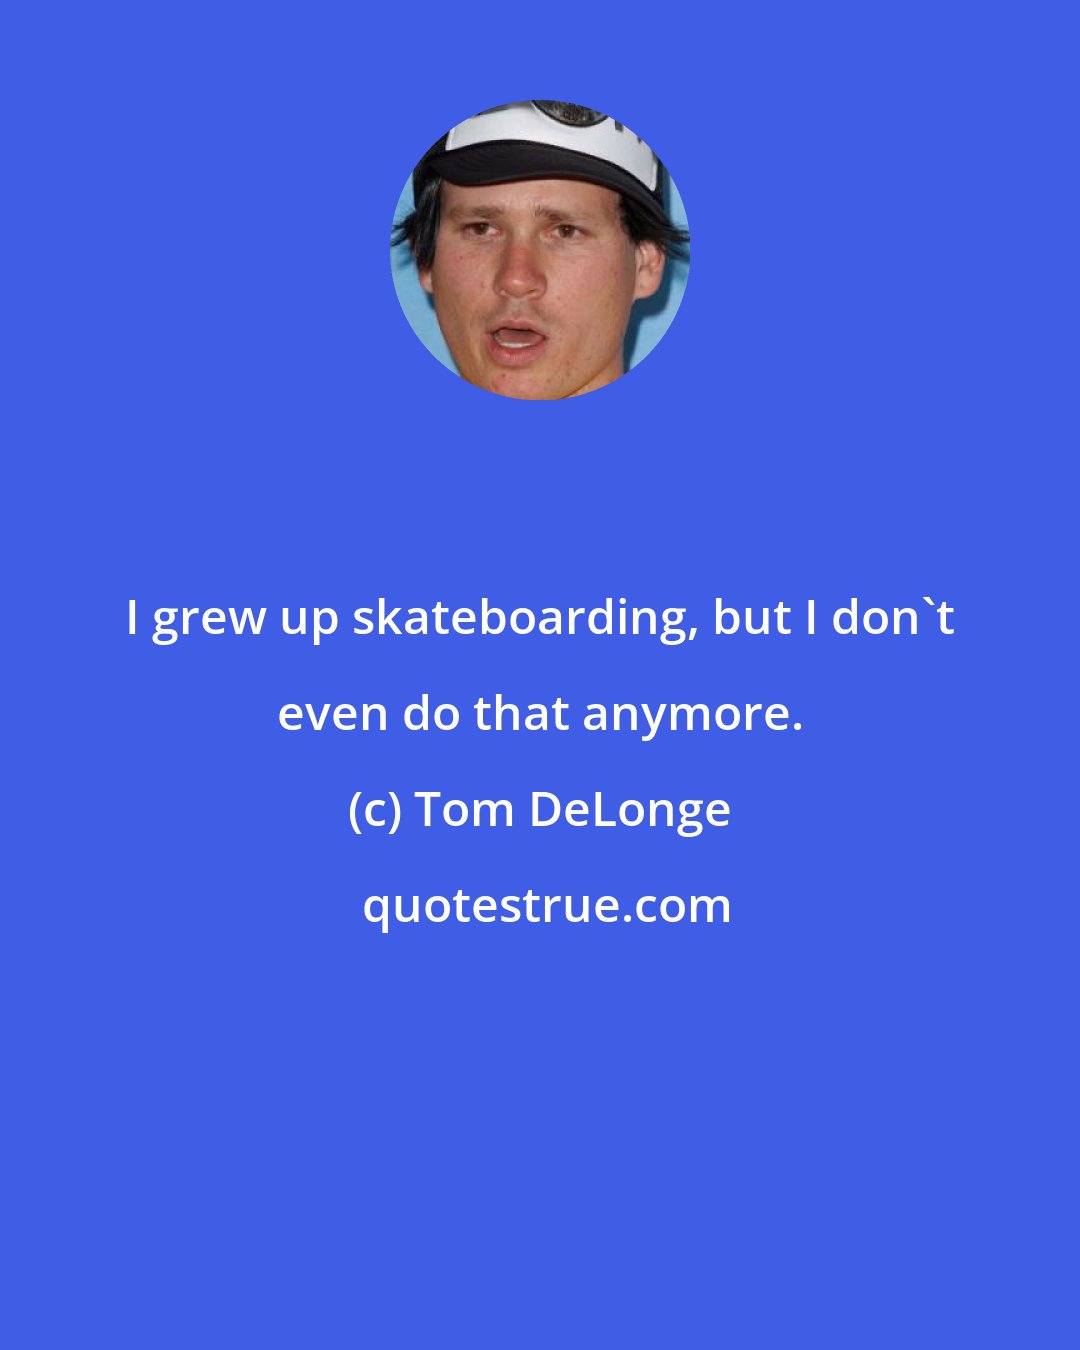 Tom DeLonge: I grew up skateboarding, but I don't even do that anymore.